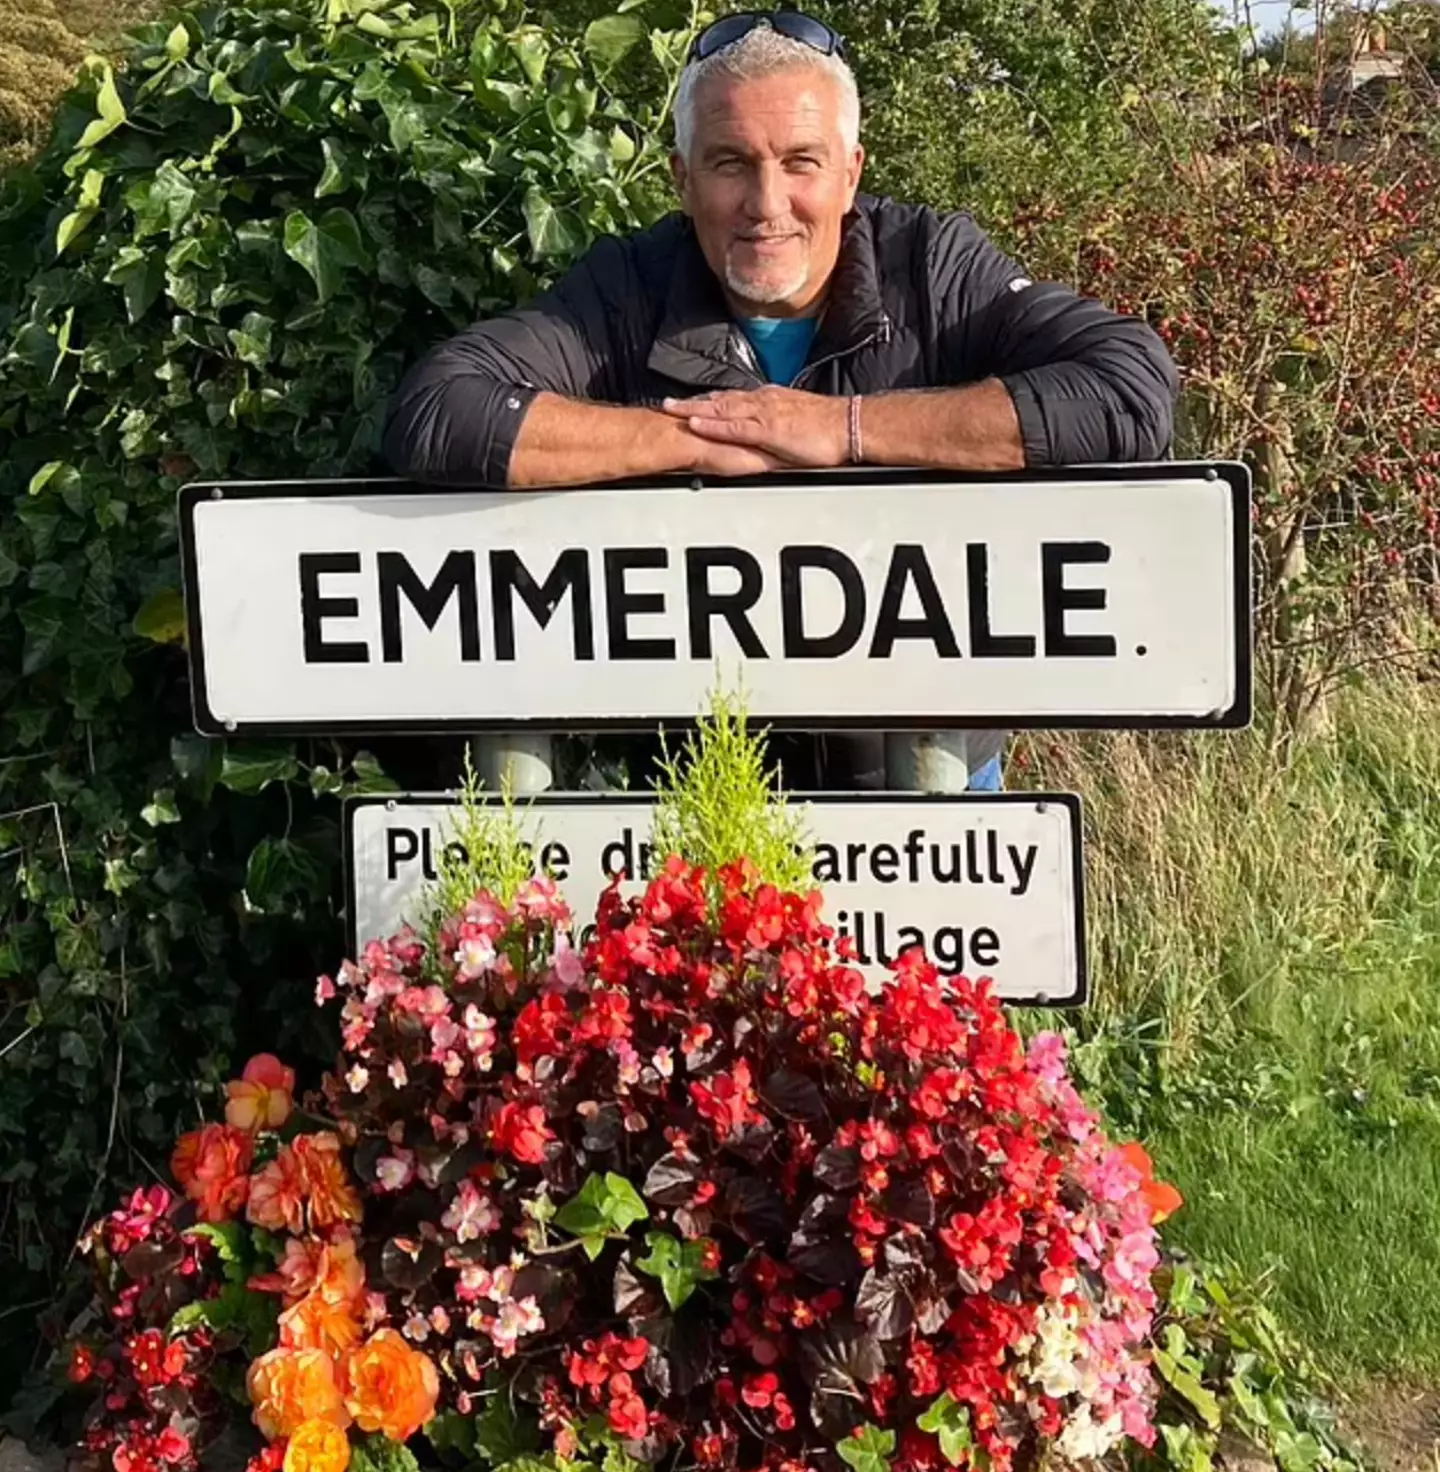 Paul Hollywood visited Emmerdale's cast on set.